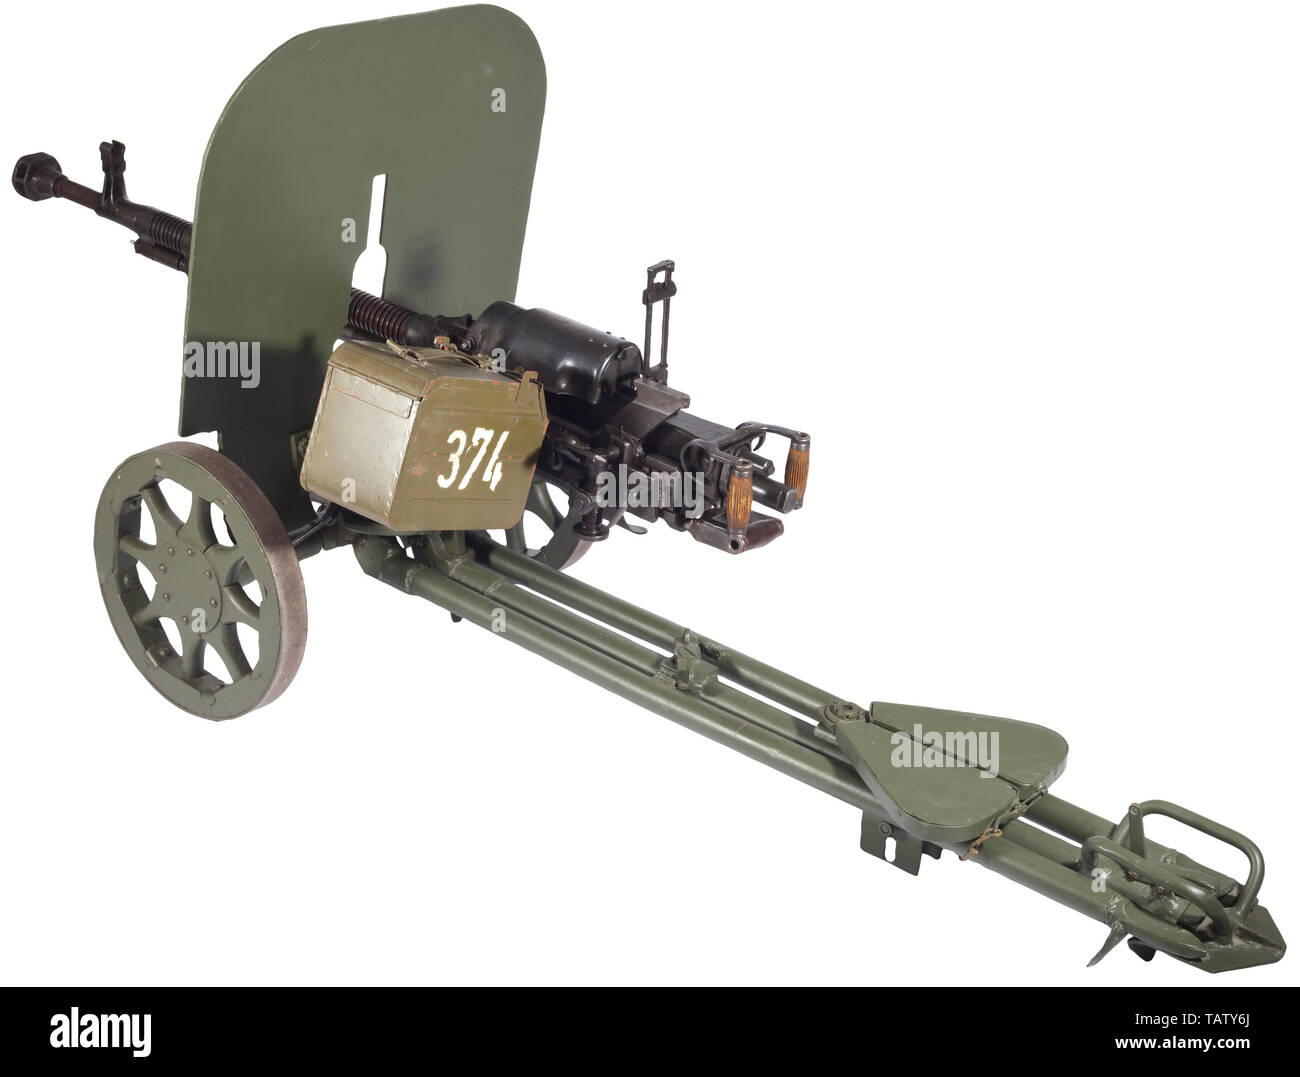 Una pesante DShK russo M 38 (Degtjarew - Shpagin) mitragliatrice, disattivati, Cal. 12,7 mm. Azionate a gas lato con alette di bloccaggio e alimentazione a nastro. Canna con scanalature di raffreddamento e la museruola freno/flash hider, lunghezza 100 cm. Attrazioni del telaio in scala 2 - 35 (200 - 3500 m.). Tasso di fuoco 550 - 600 colpi/min. Completare con un fucile titolari, superiore/inferiore di montaggio a pistola, abbassare il carrello con assale e ruote, tre montato girevole supporta, sedile a bordo vasca e di scudo. Viene fornito con scatola della cartuccia e la cartuccia nastro. Usato contro bersagli di terra, come serbatoio di difesa e come flak- e un serbatoio di mitragliatrice. Termine della Wehrmacht fo, Editorial-Use-solo Foto Stock